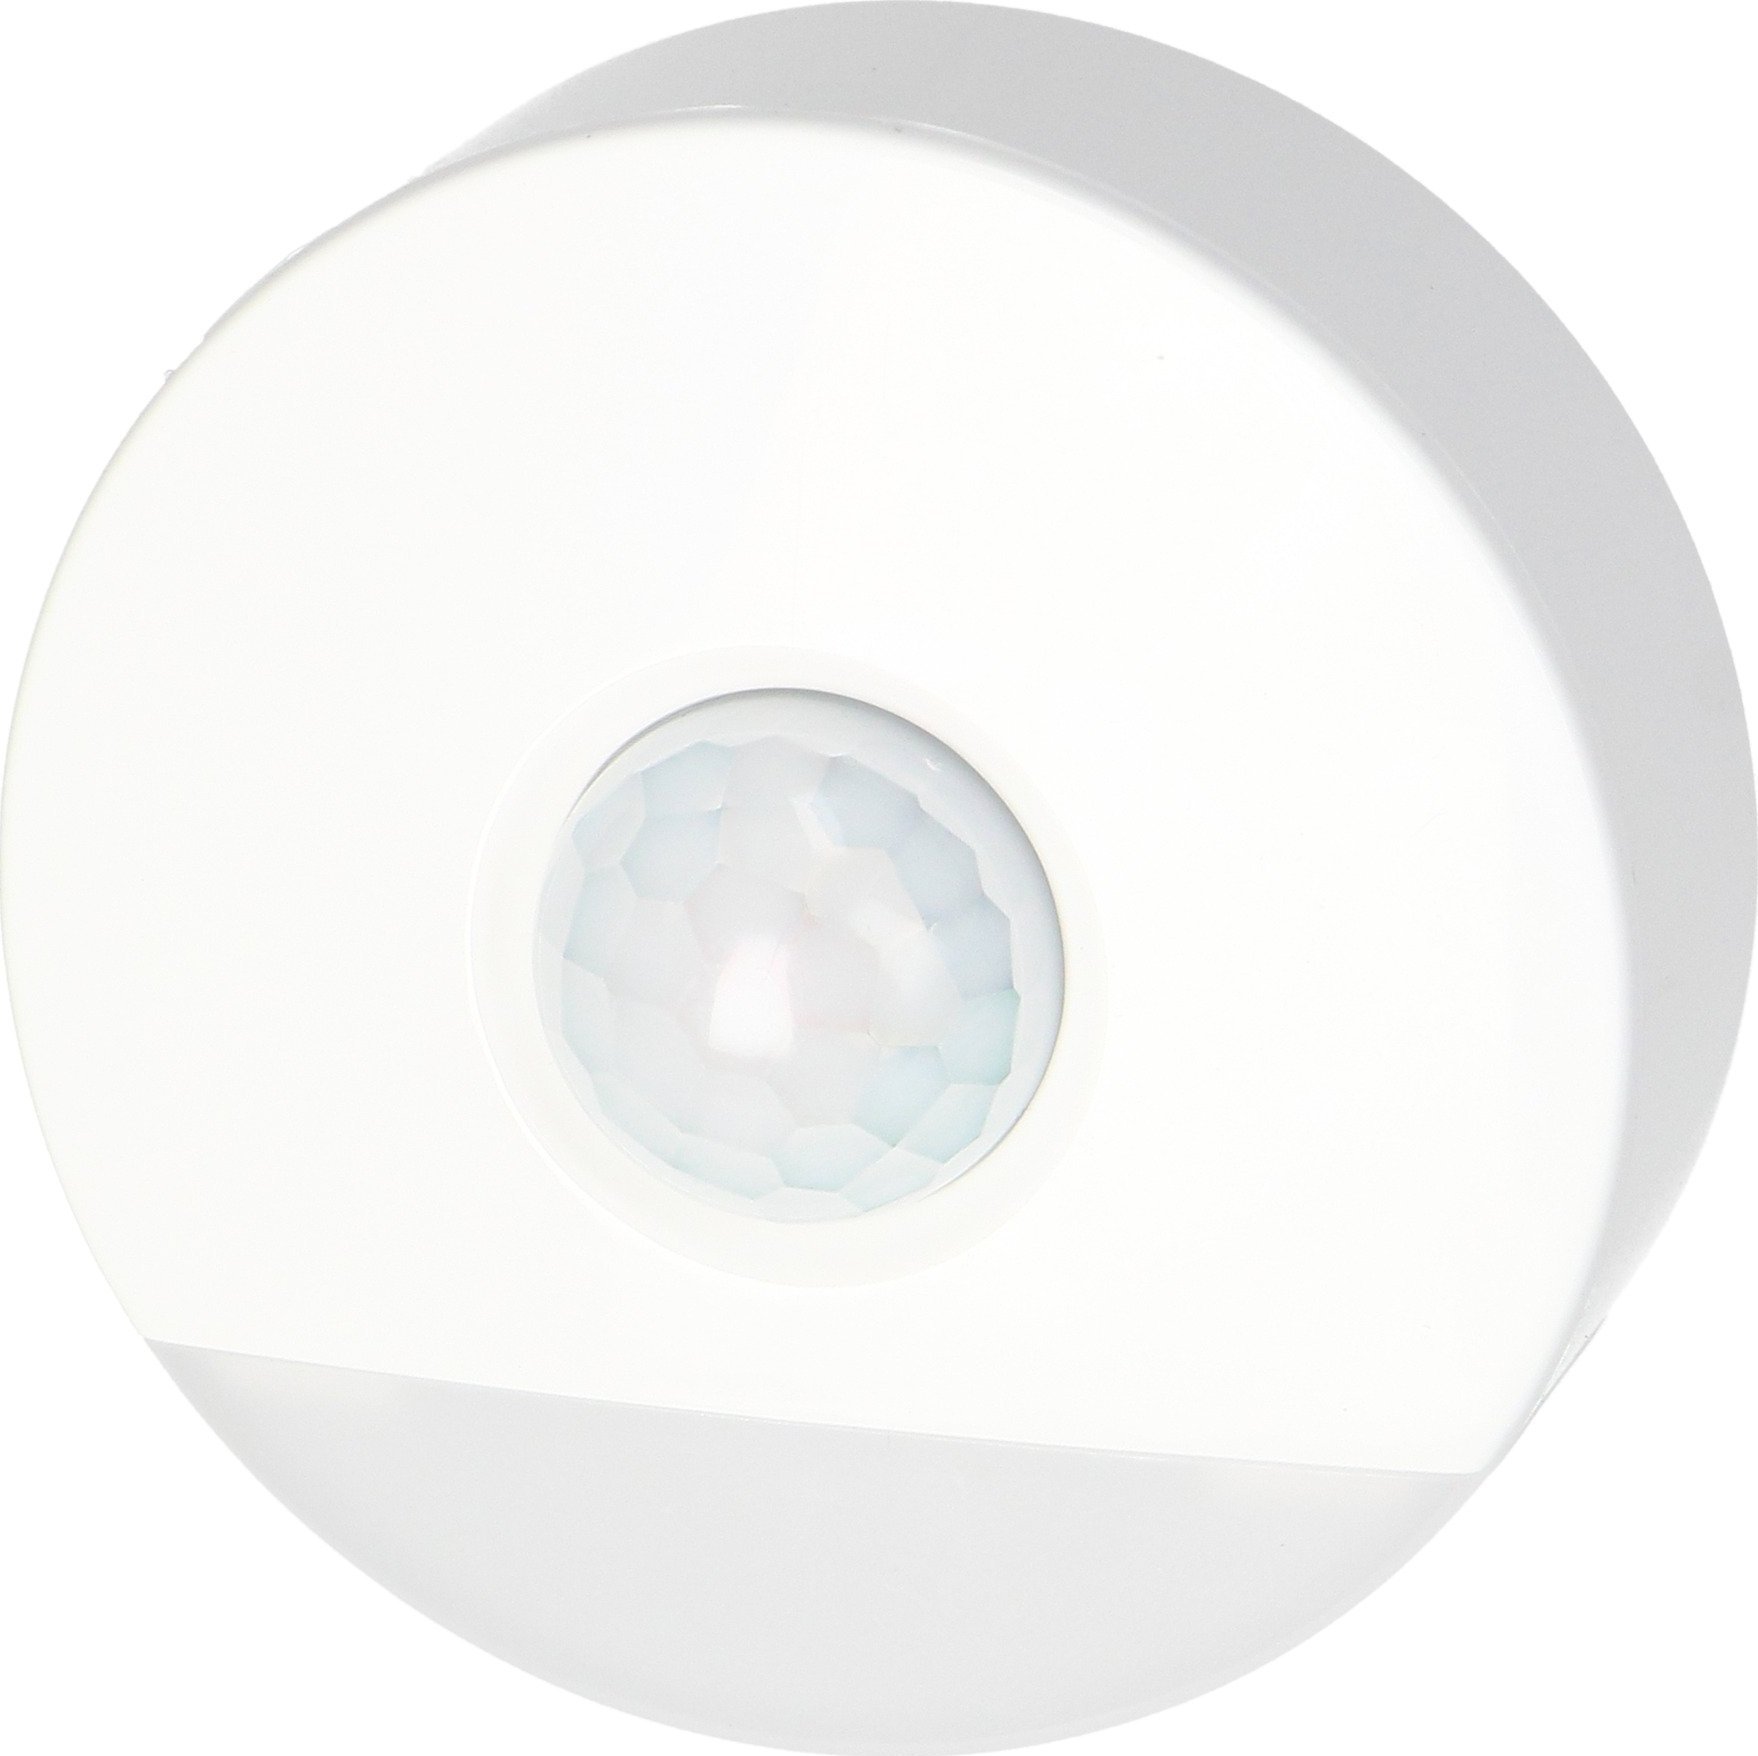 Lampă de noapte Orno LED cu senzor de mișcare, cu funcție de coridor 0,2W / 3W, 200lm